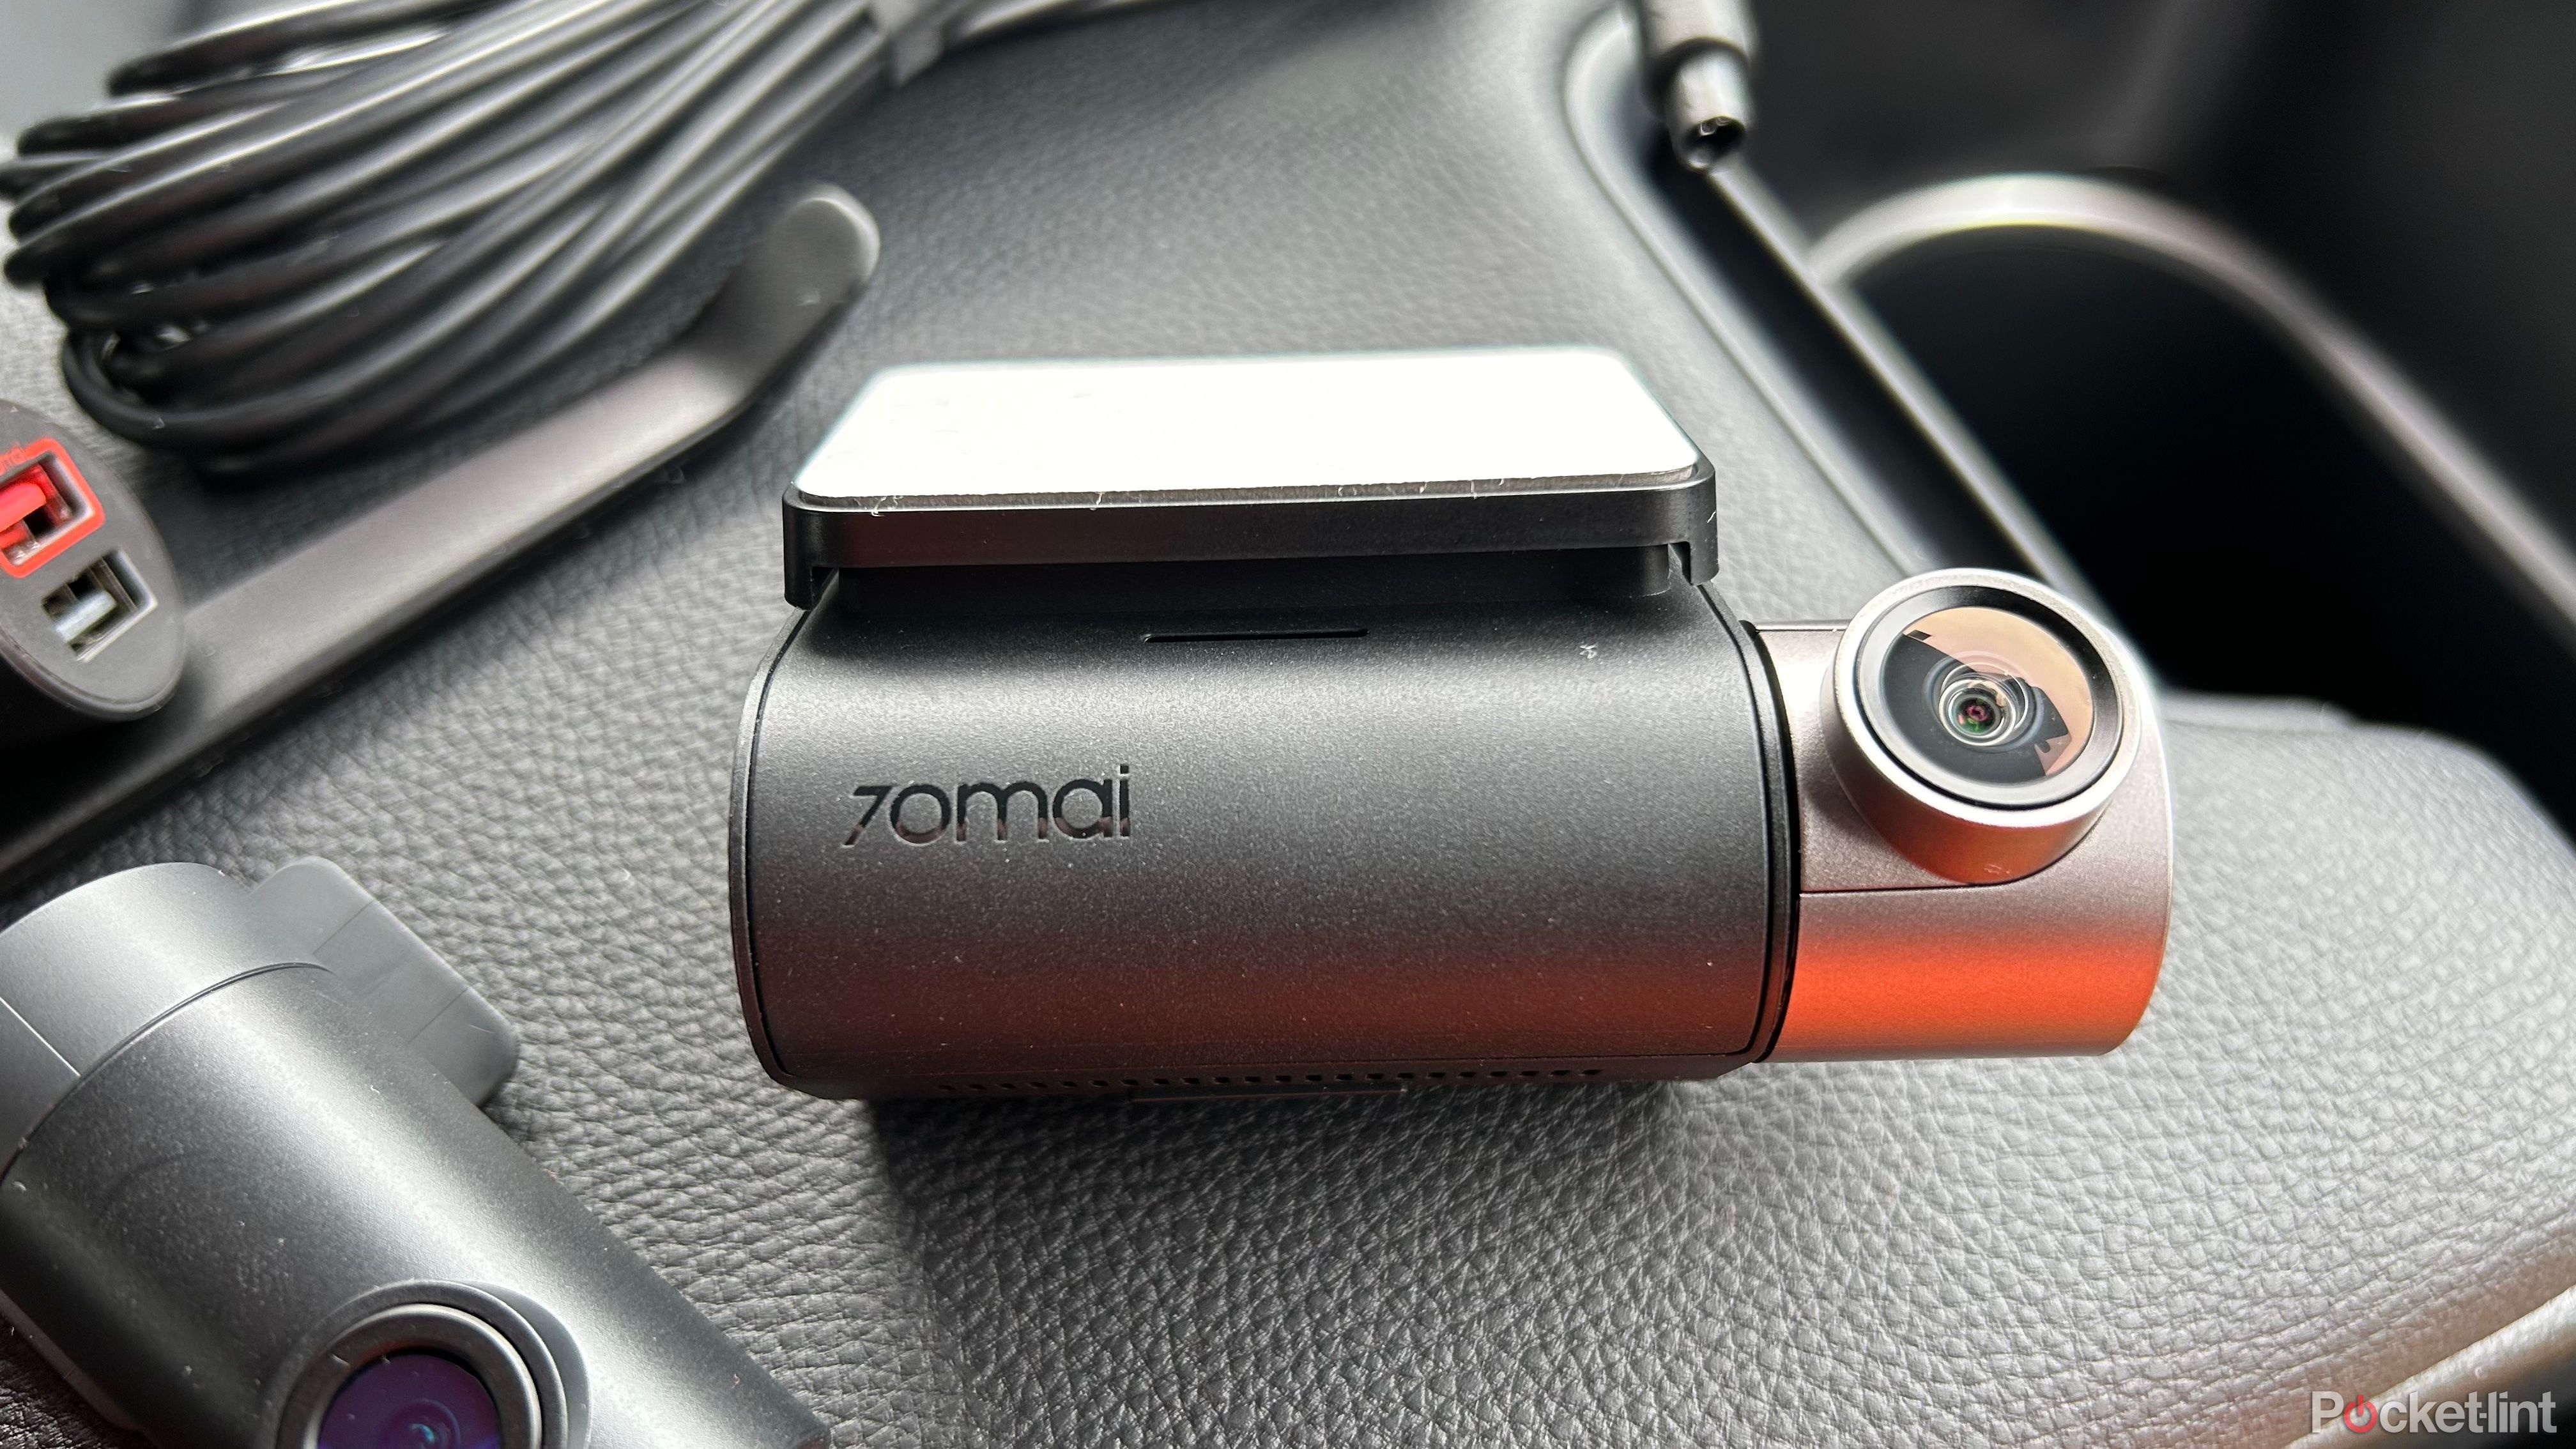 70mai Dash Cam A510 review: Two cameras on a budget